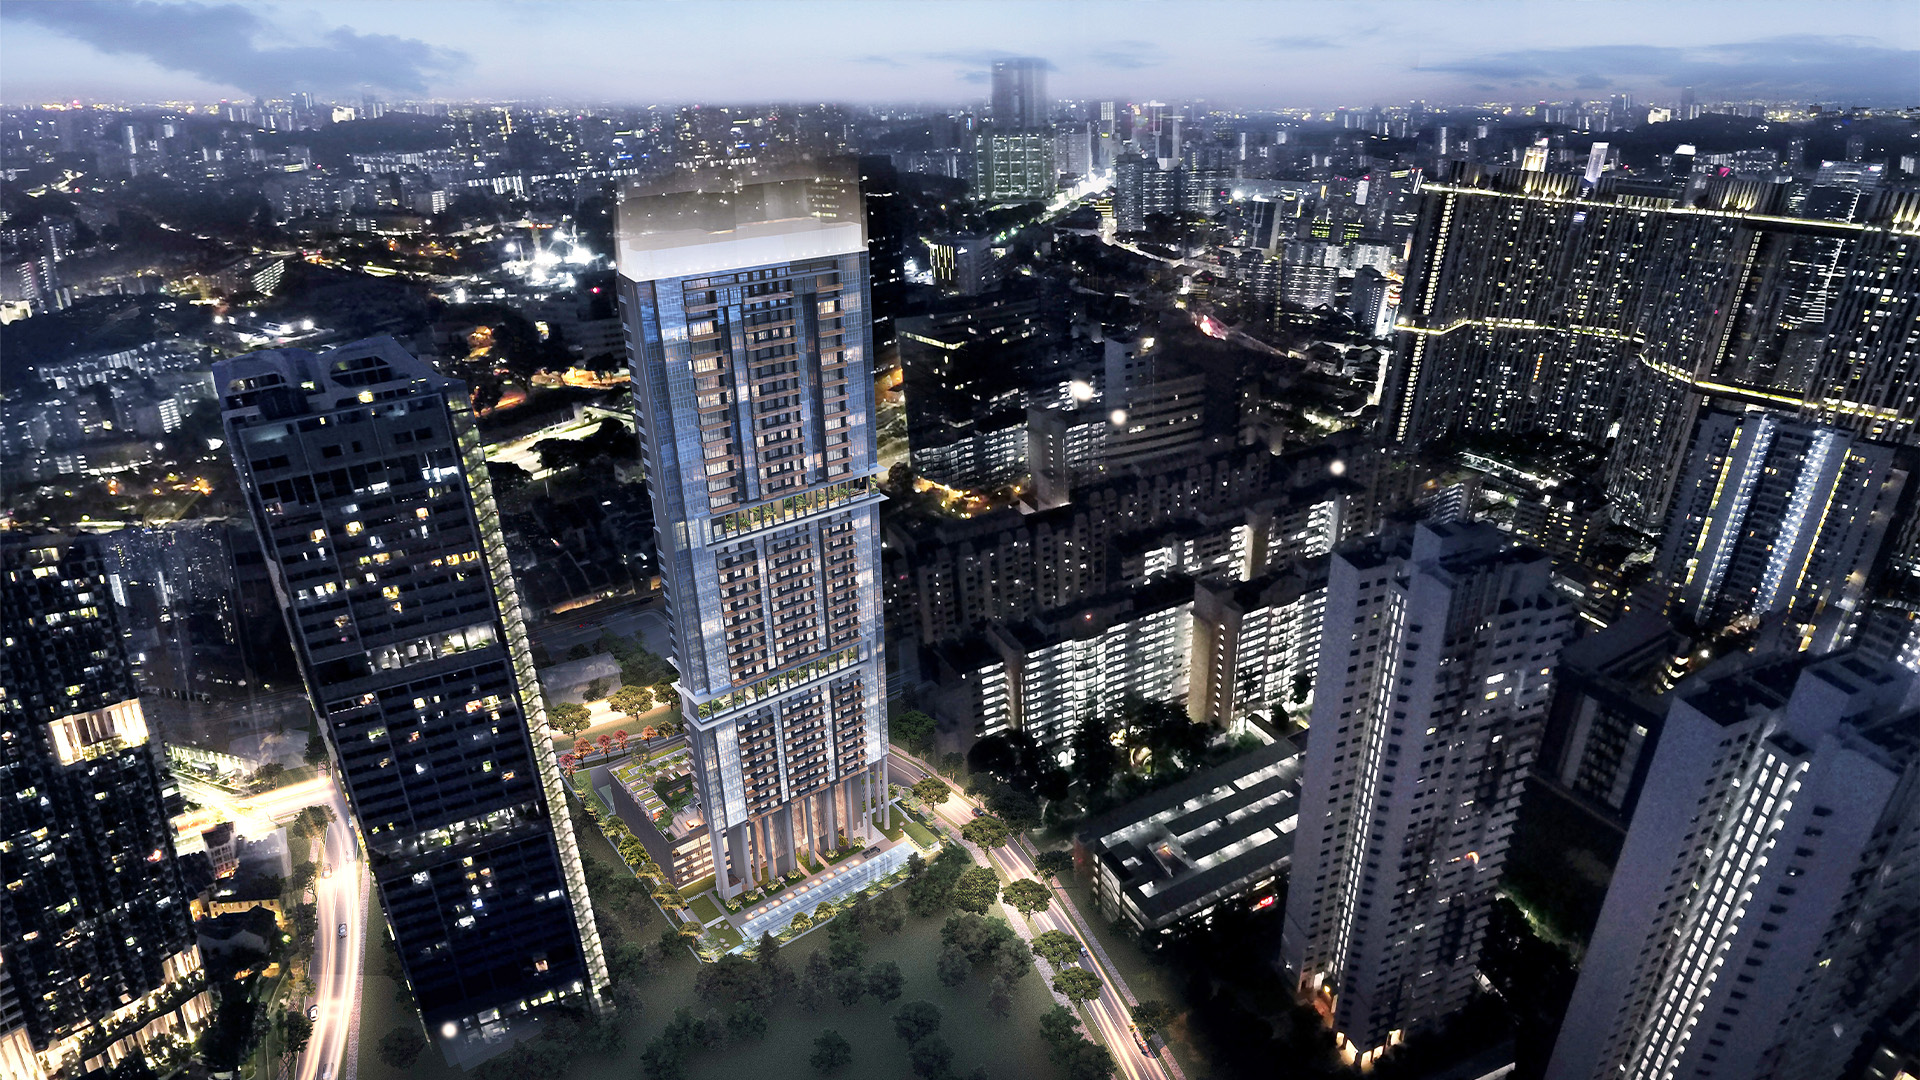 Sky Everton Singapore luxury apartments facade night view